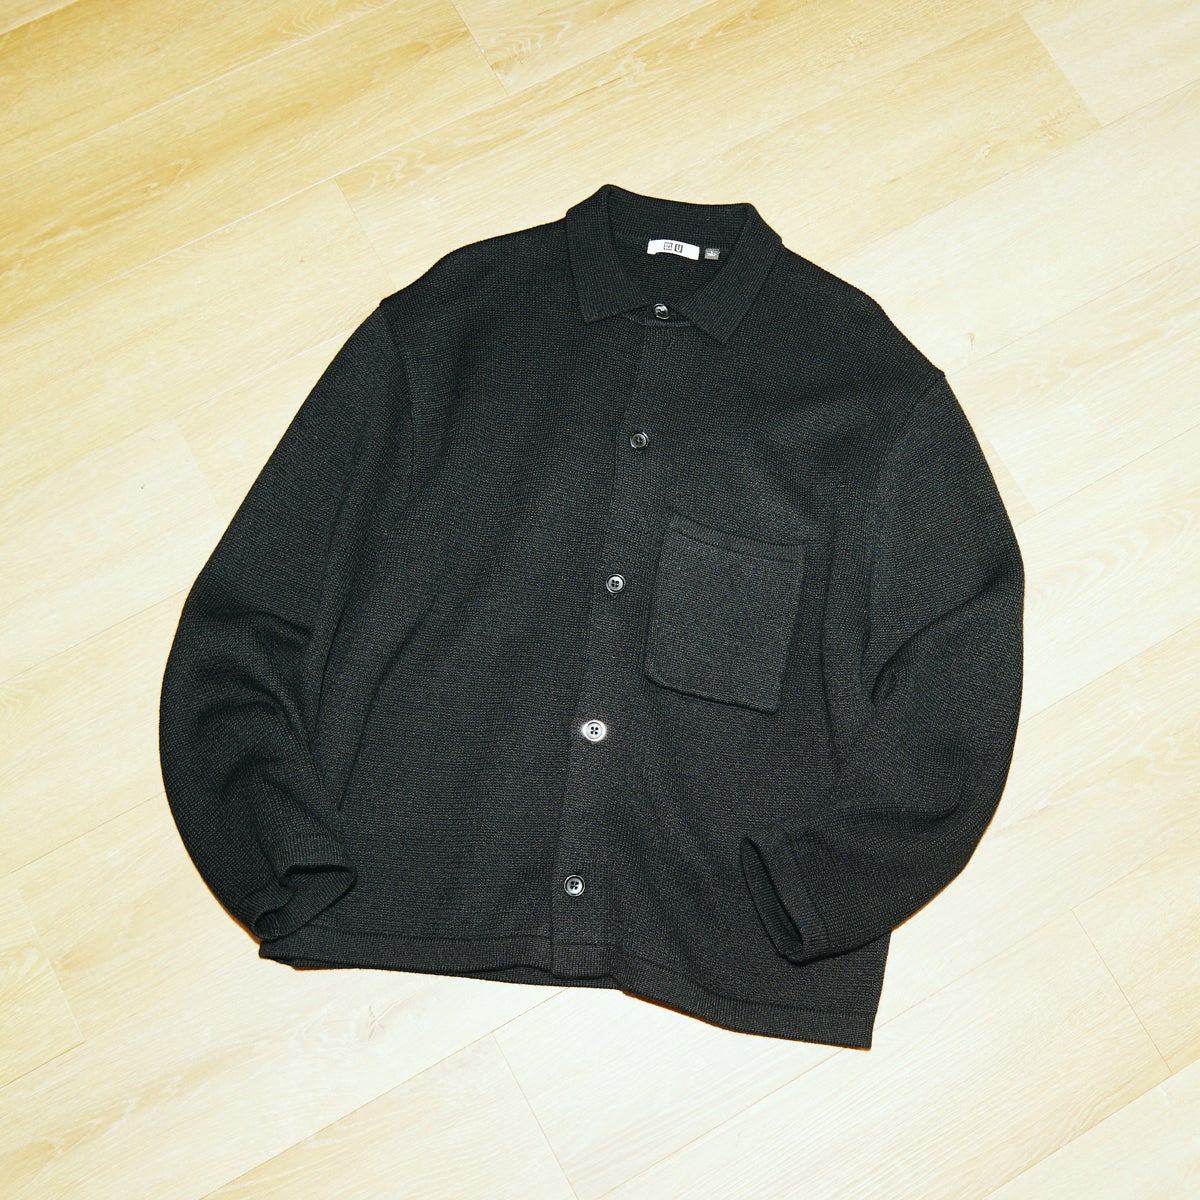 ニットオーバーシャツジャケット ユニクロu ブラック Mサイズ-